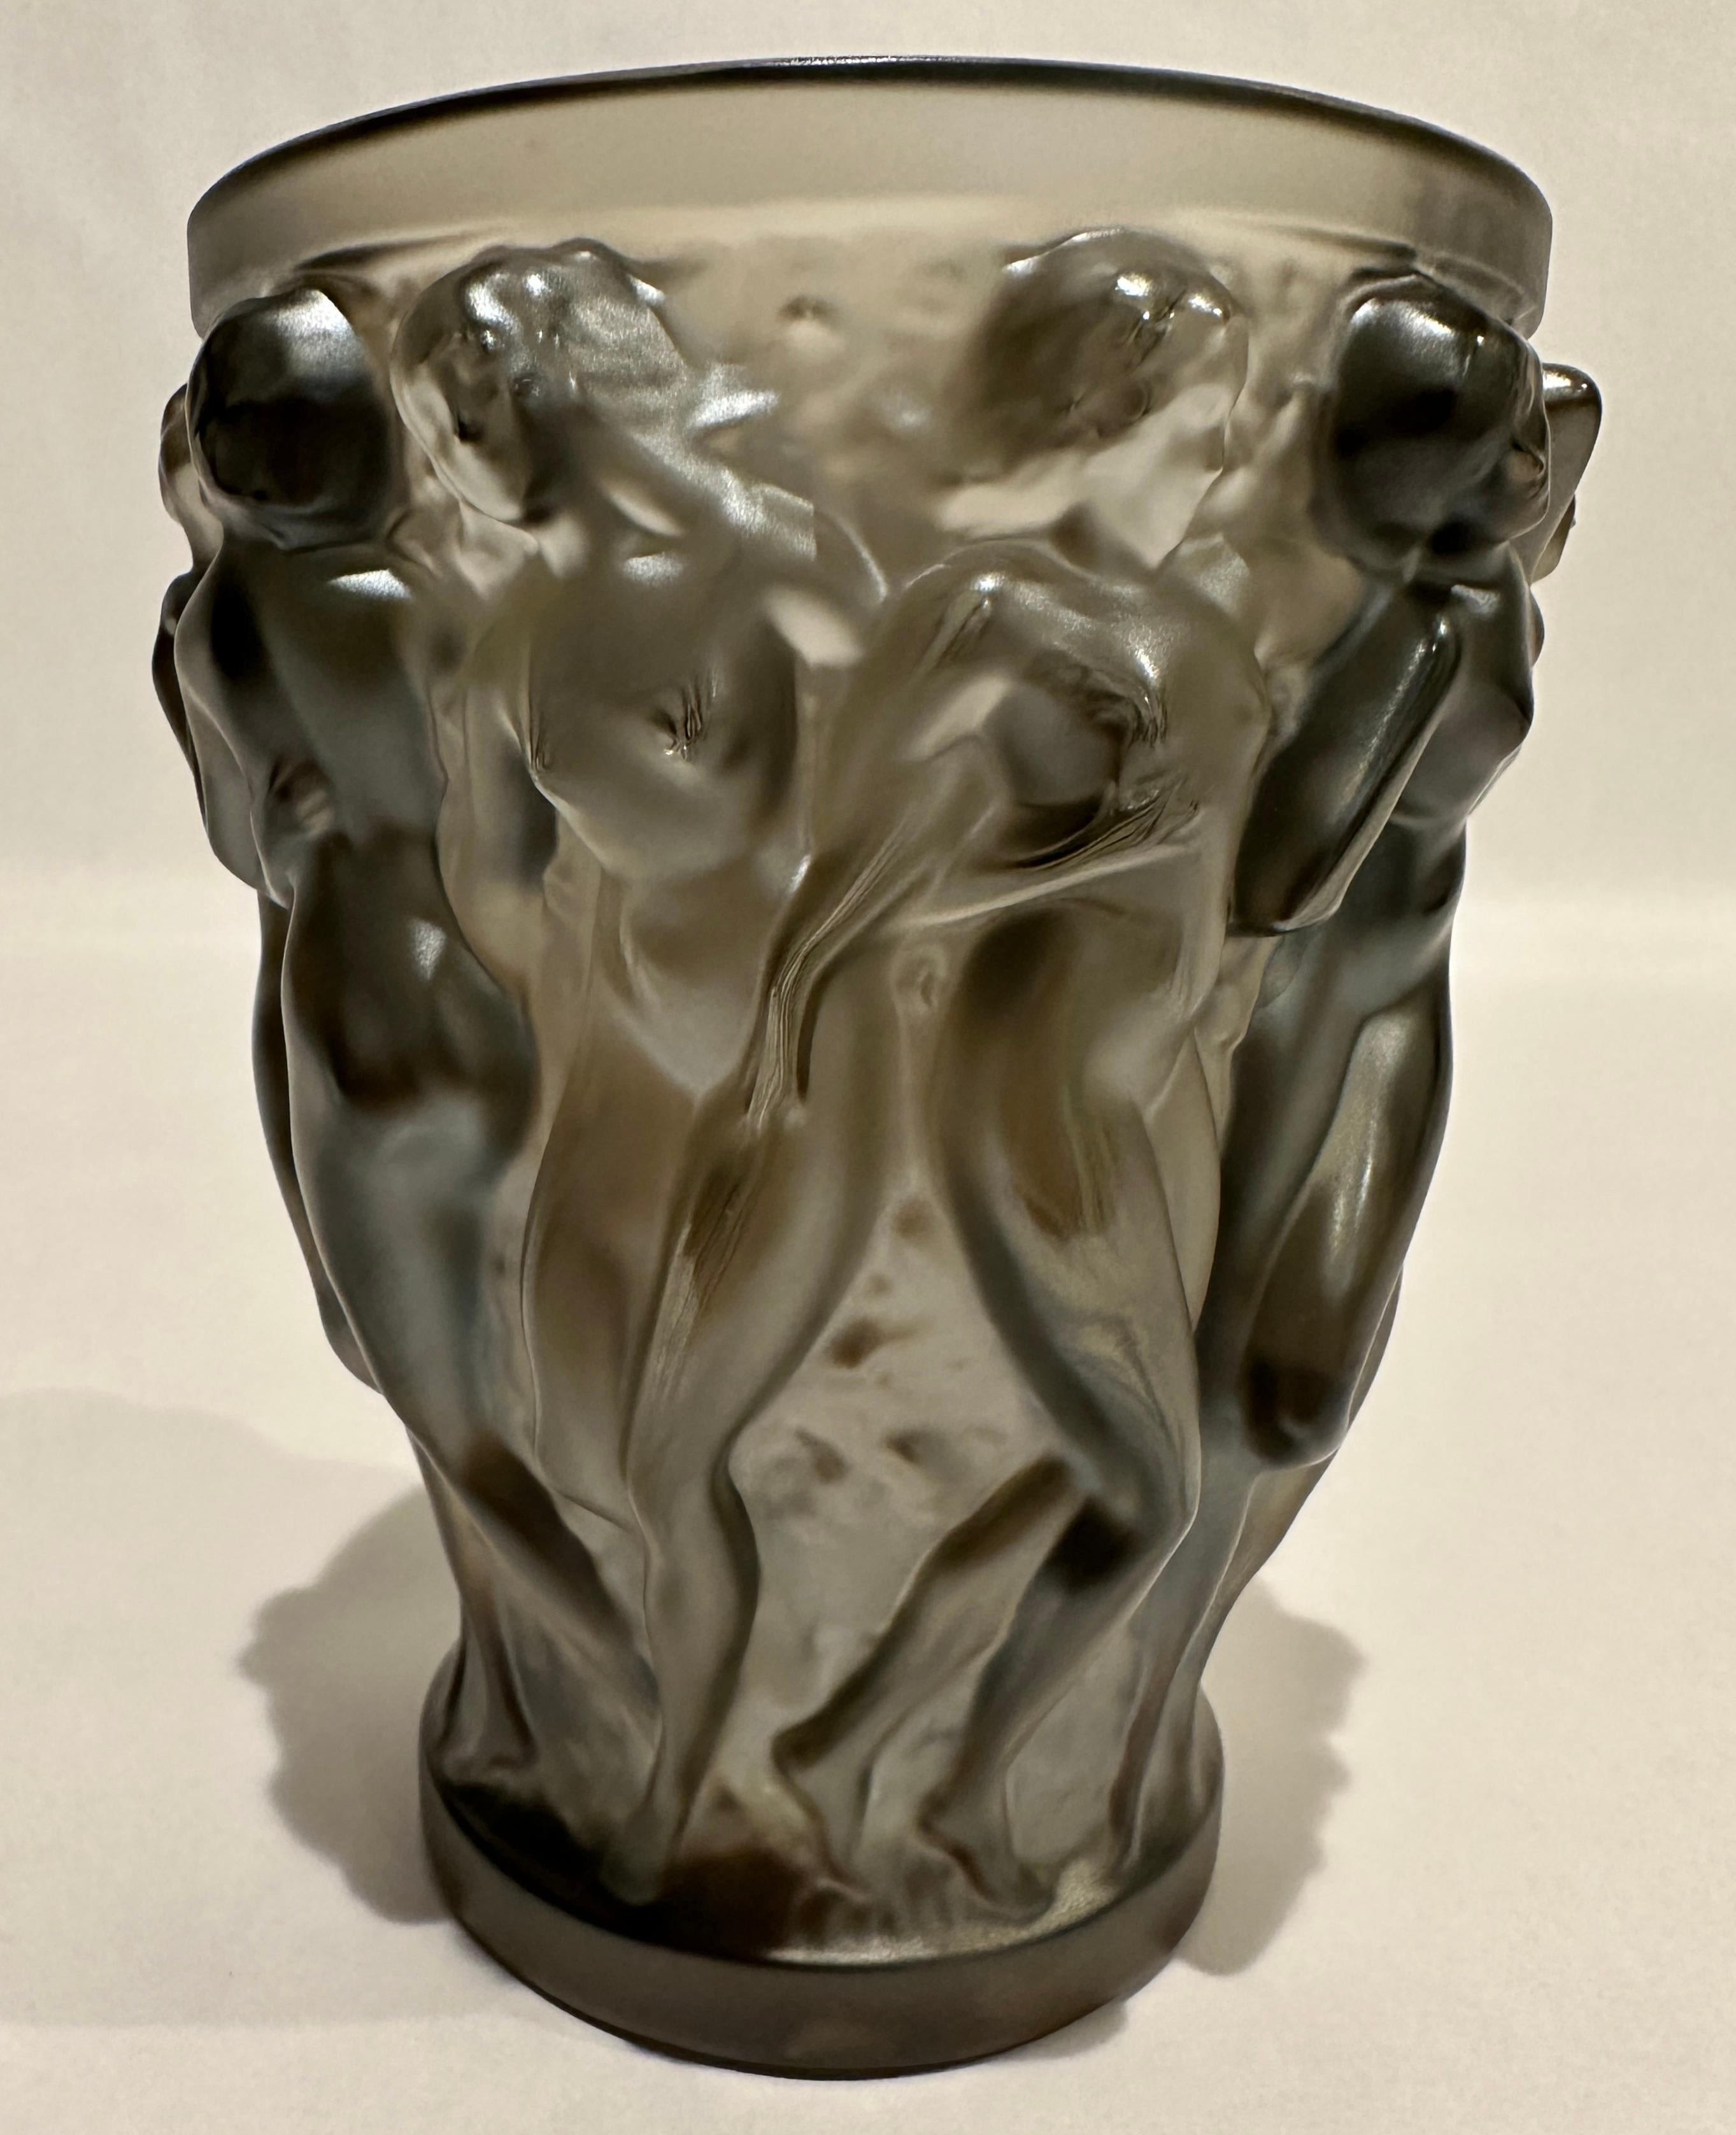 Lalique Bacchantes Kristallvase in bronzefarbenem Satin, signiert im Boden. Originales klares Label von Lalique.

Rene Laliques grenzenlose Fantasie und sein kreatives Genie führten 1927 zur Kreation der Bacchantinnen-Vase. Als prächtige Frechheit